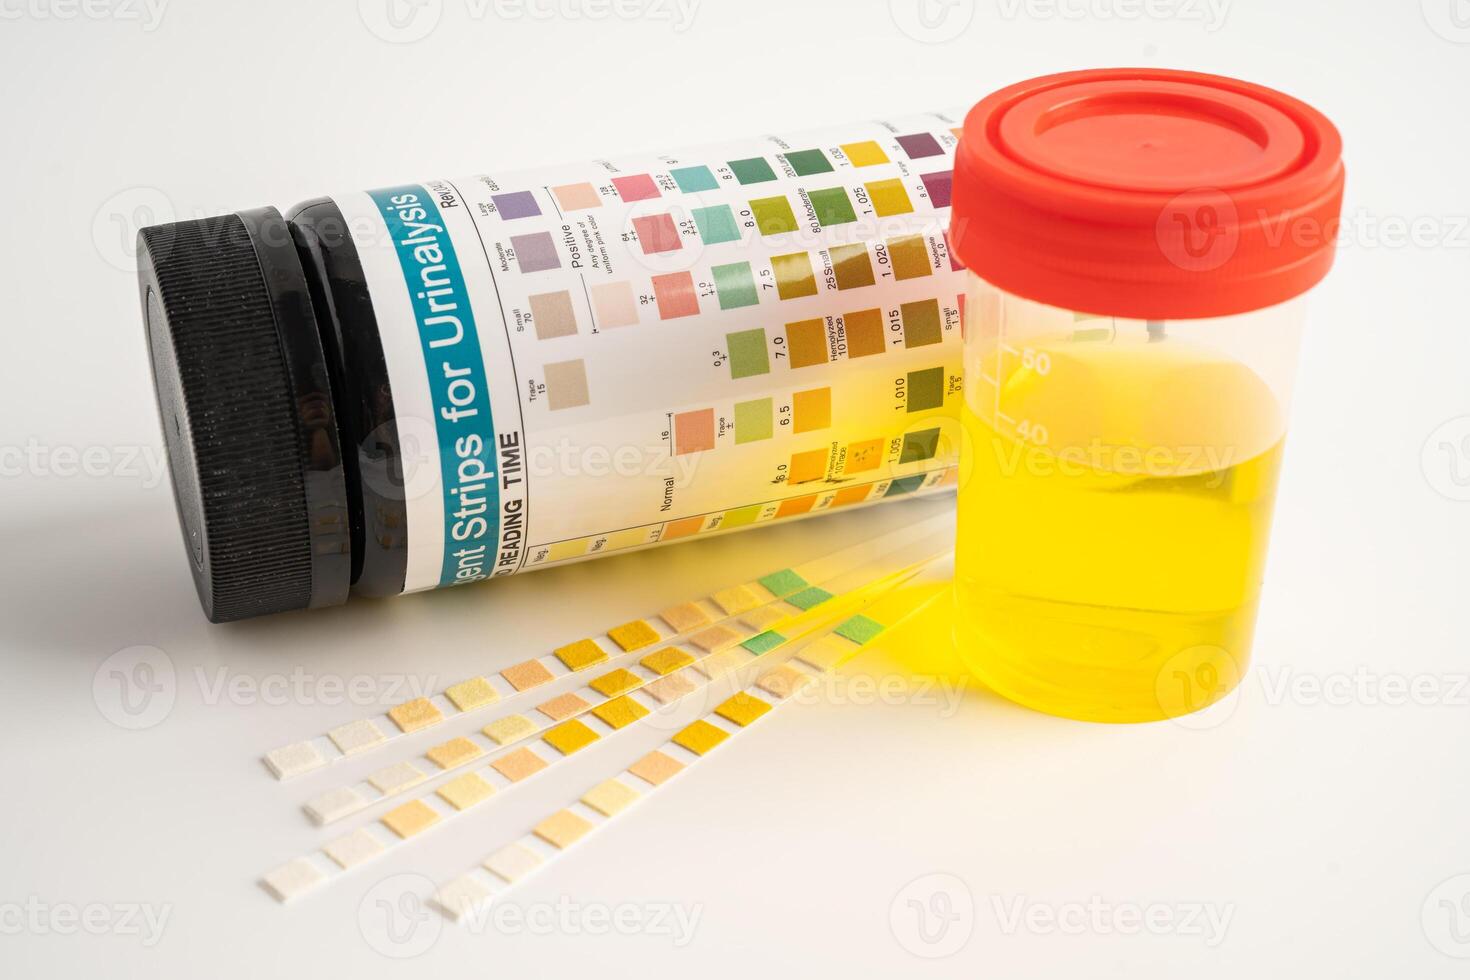 urinálise, urina copo com reagente faixa ph papel teste e comparação gráfico dentro laboratório. foto